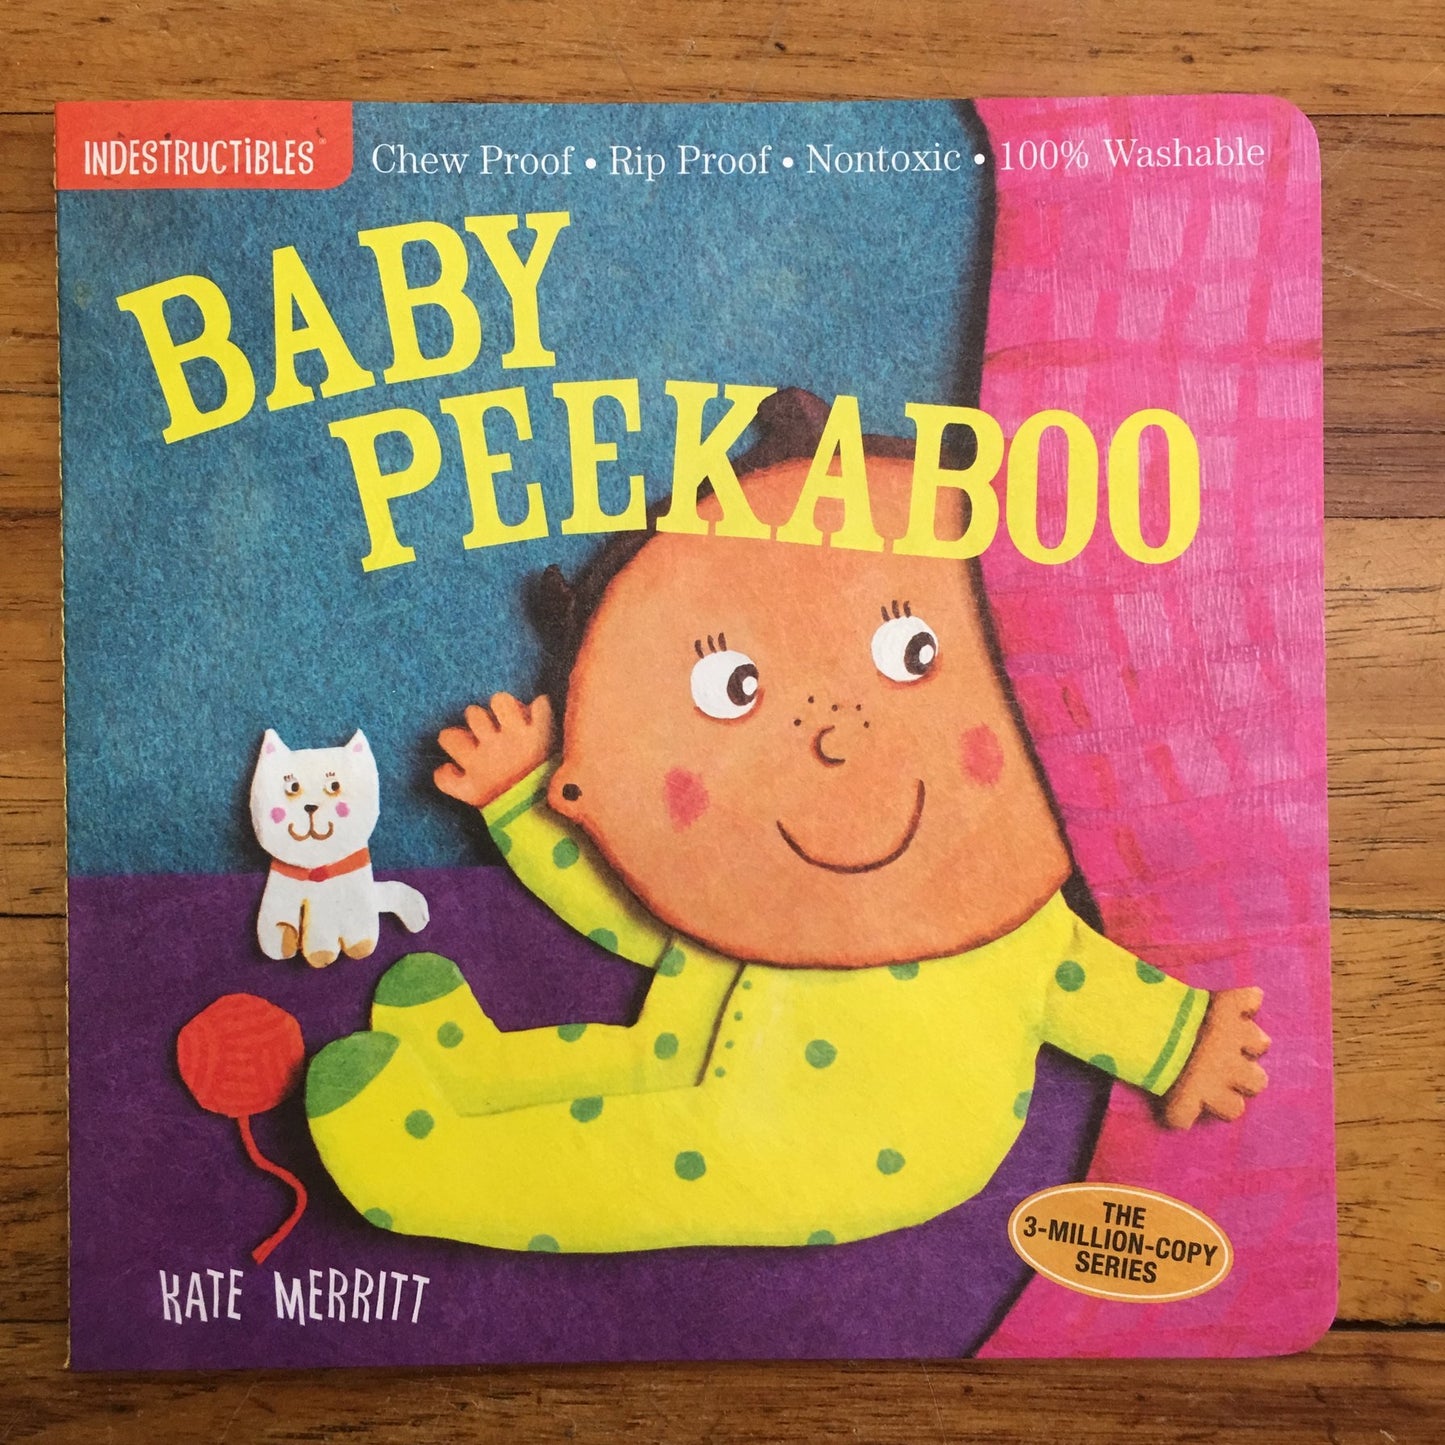 INDESTRUCTIBLES CHILDREN BOOK/BABY PEEK A BOO